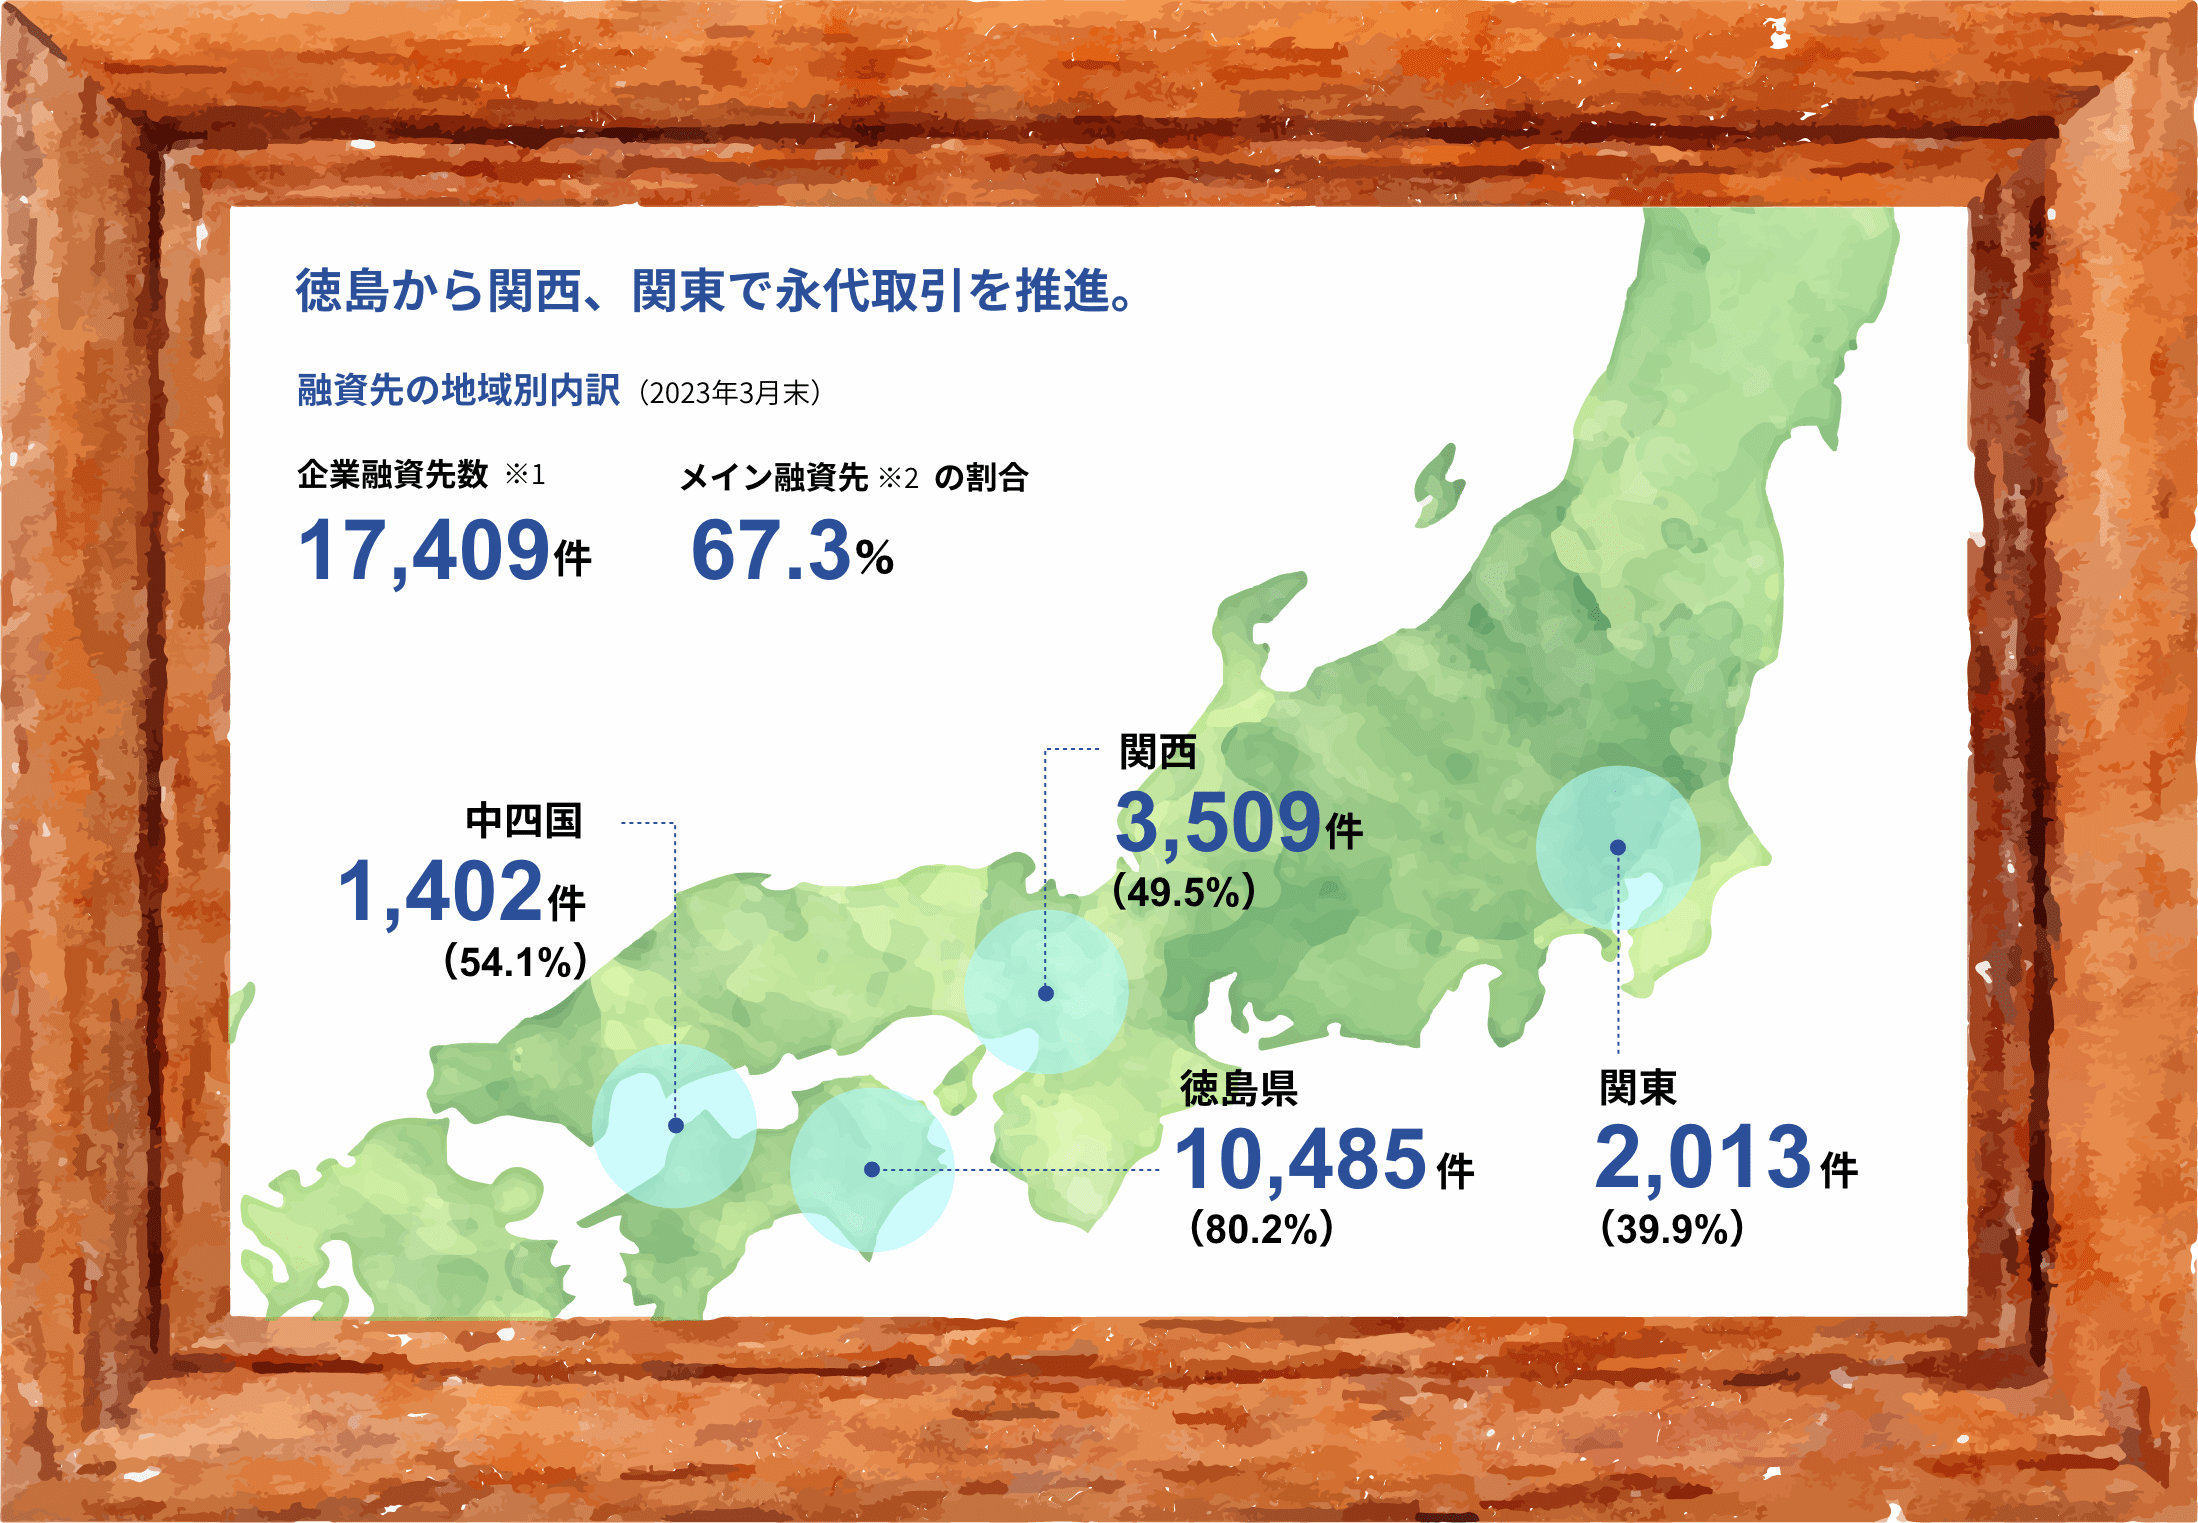 徳島から関西、関東で永代取引を推進